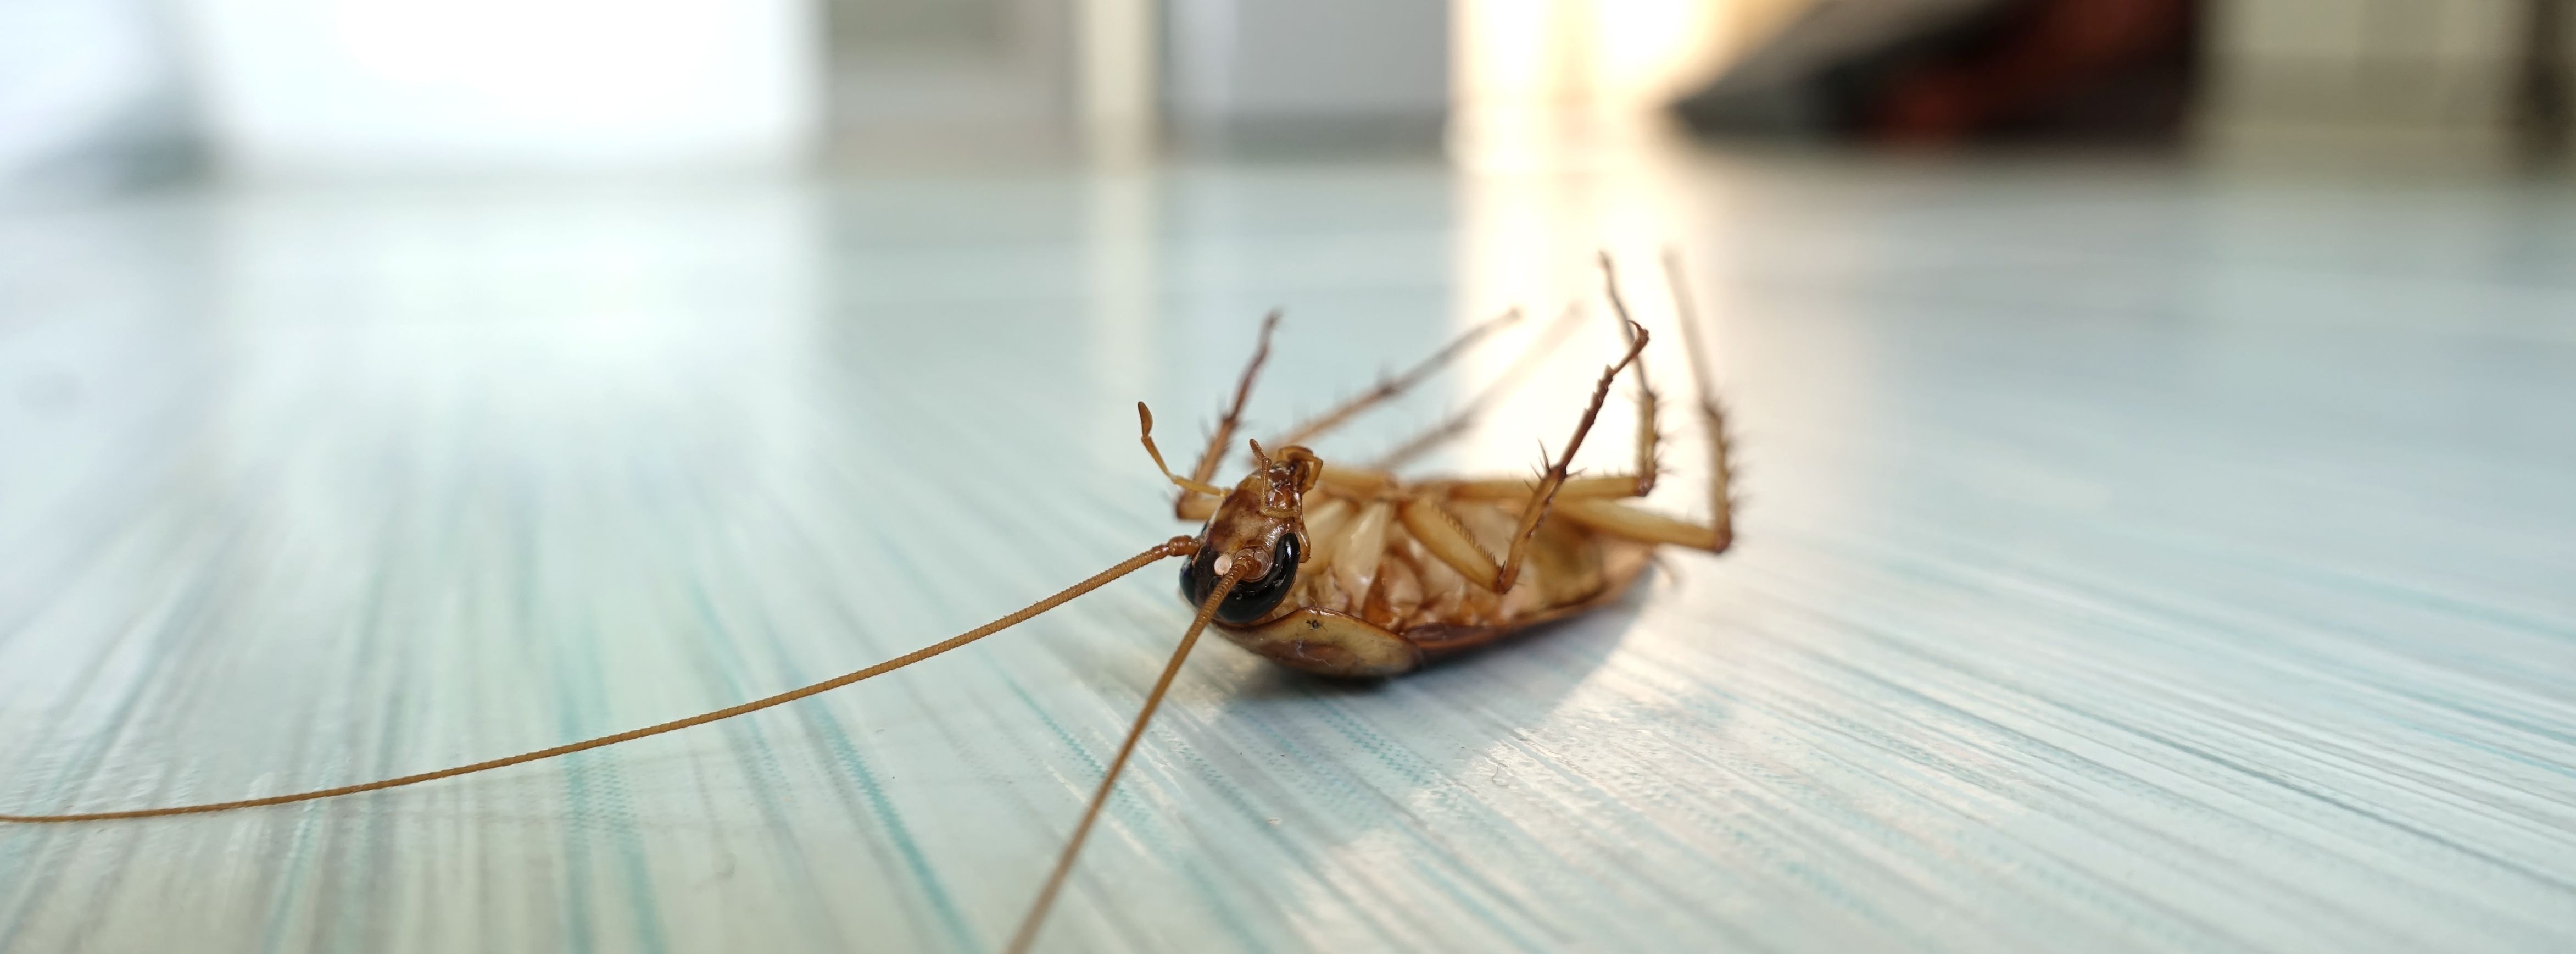 TERRO Trampa magnética para cucarachas sin veneno T256 con tecnología  exclusiva de feromonas, mata hormigas, arañas, escropiones, peces  plateados, grillos y más - 12 trampas : Todo lo demás 